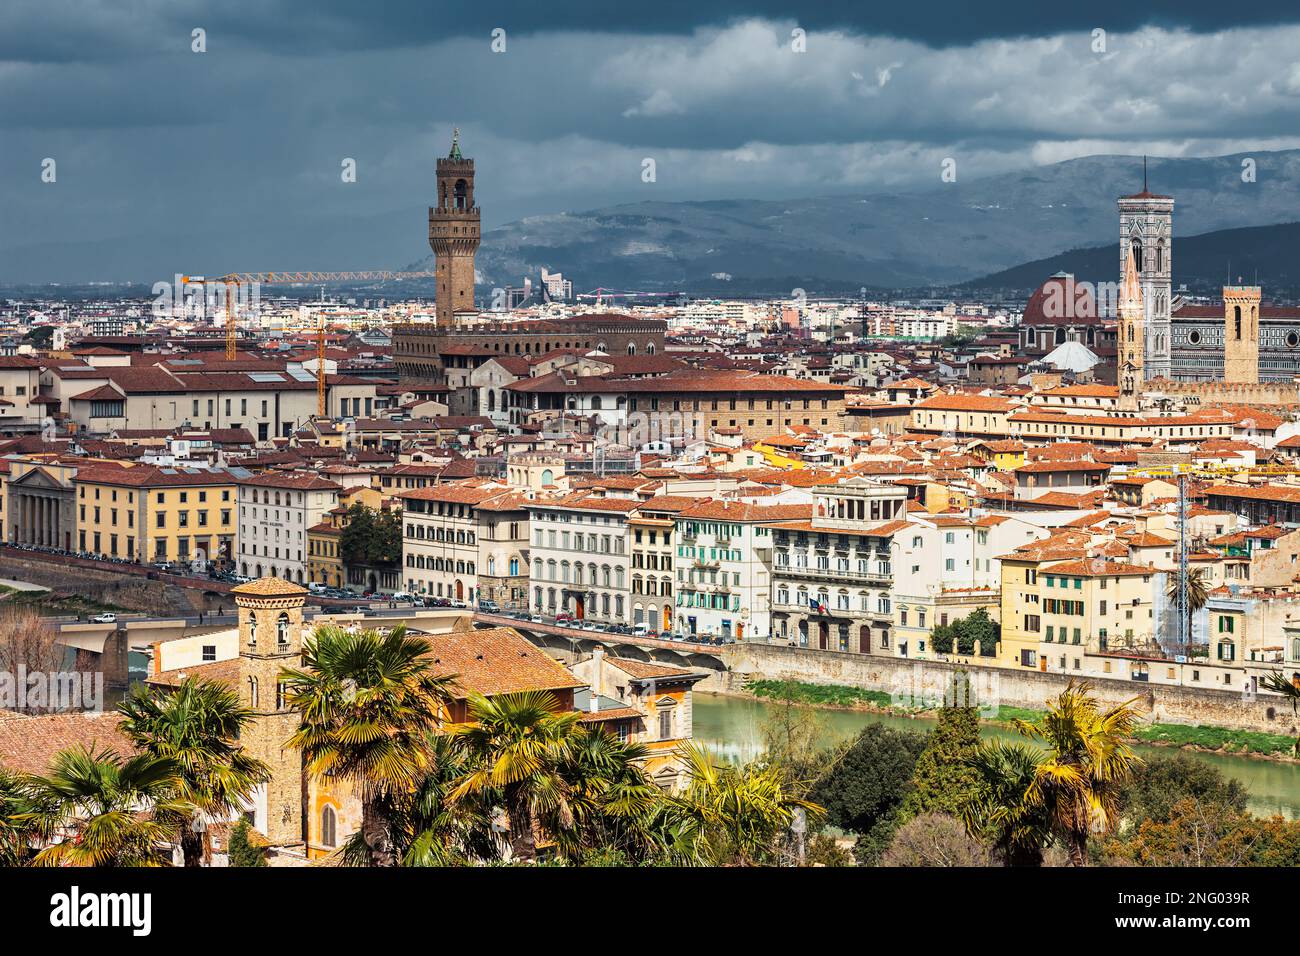 Altstadt von Florenz mit Palazzo Vecchio Rathaus und Kathedrale, Toskana, Italien Stockfoto